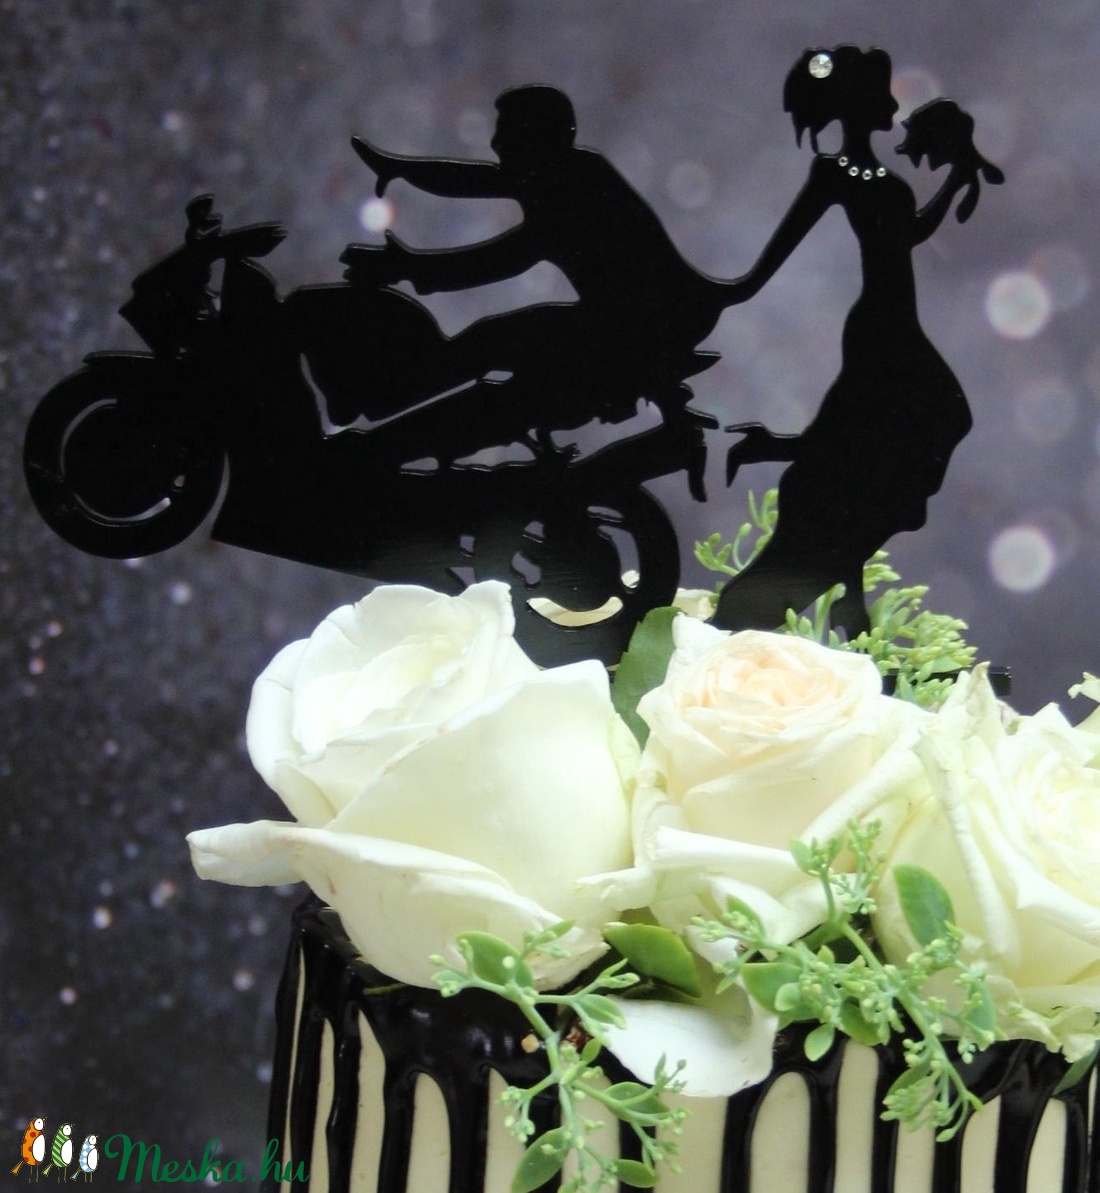 Motoros esküvői tortadísz/csúcsdísz CBR HONDA Motoros menyasszony és vőlegény Esküvői dekoráció tortára  - esküvő - dekoráció - sütidísz - Meska.hu